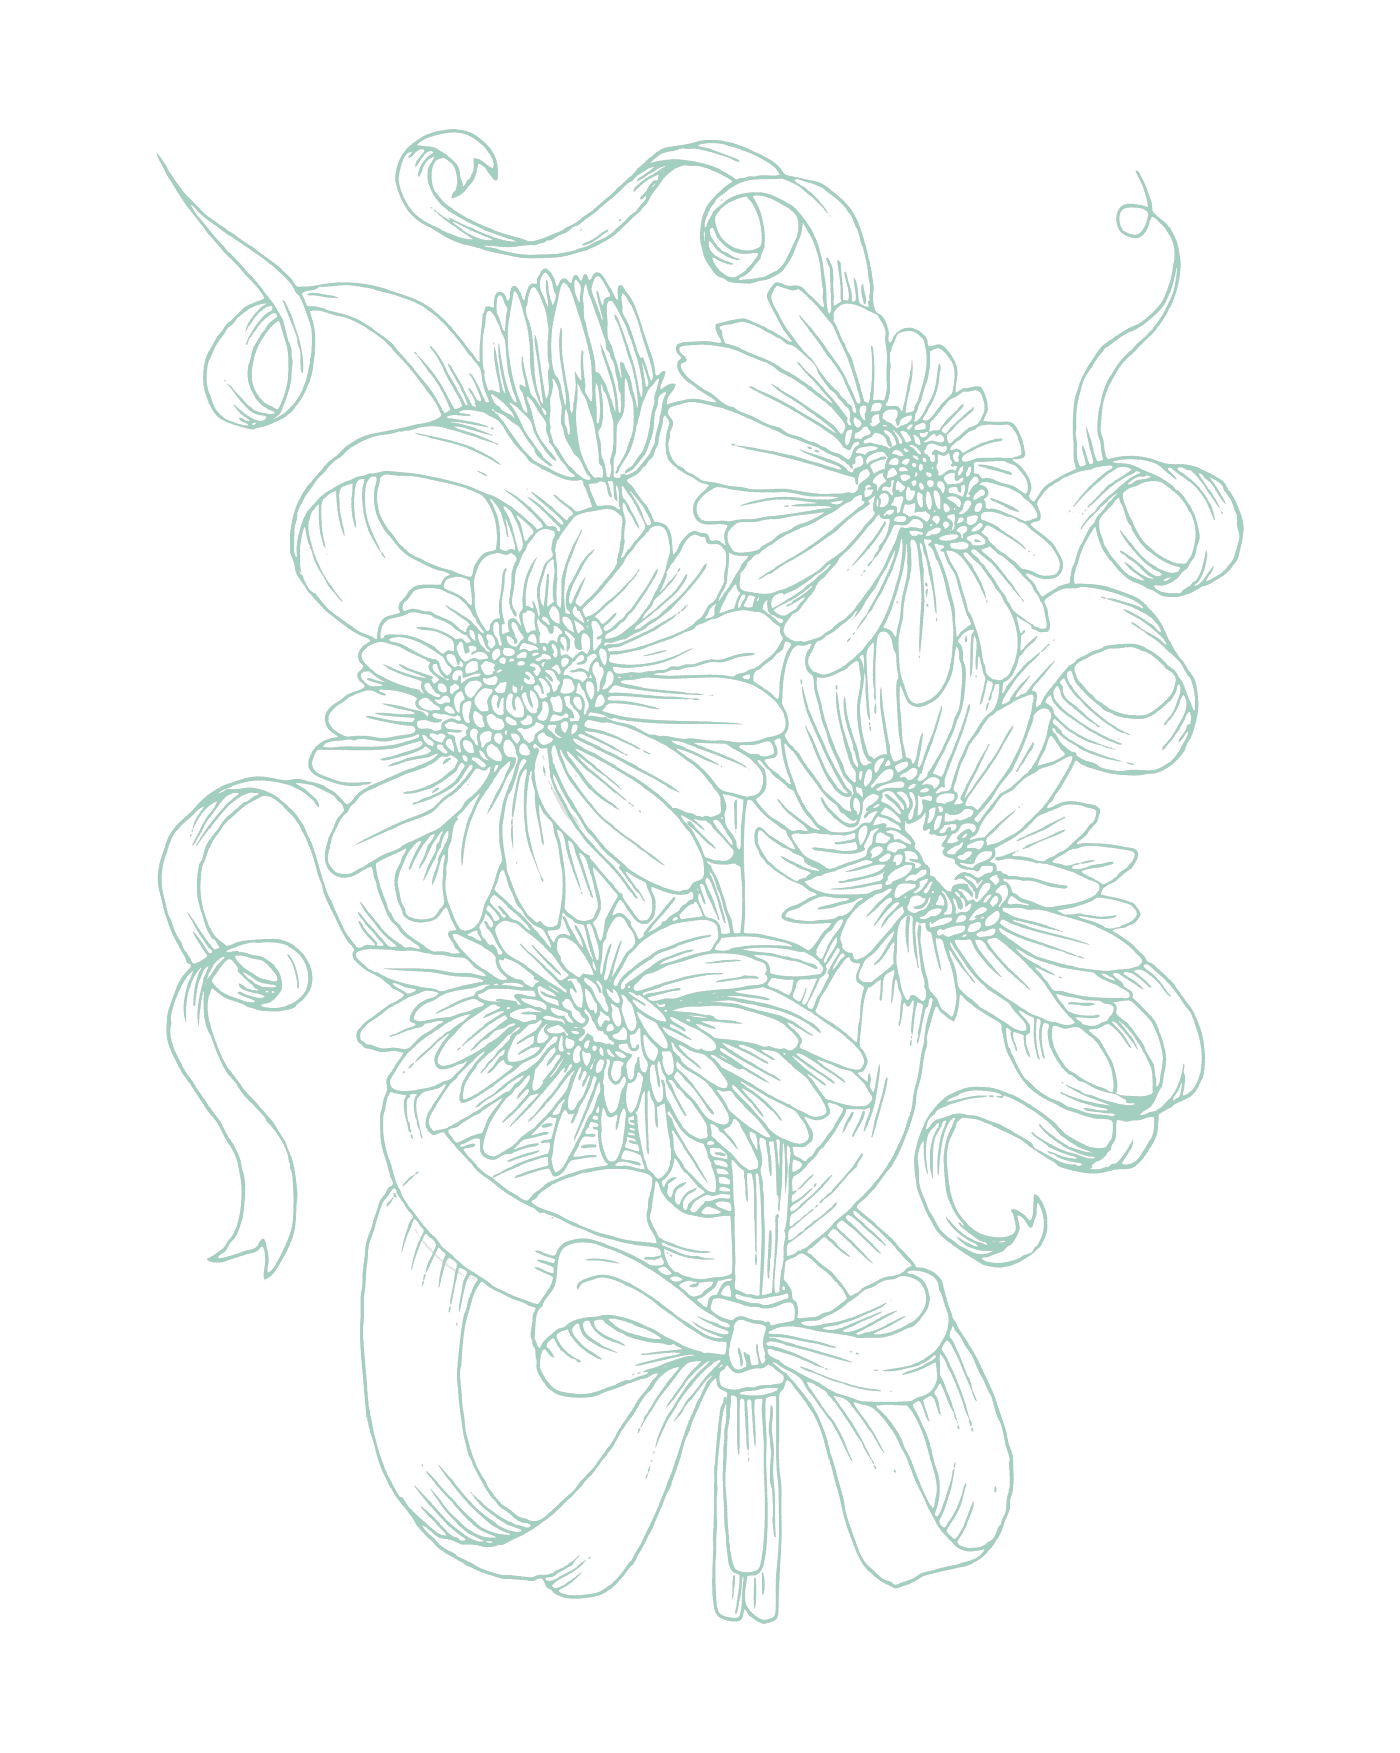  Um buquê complexo e realista de flores em um vaso 